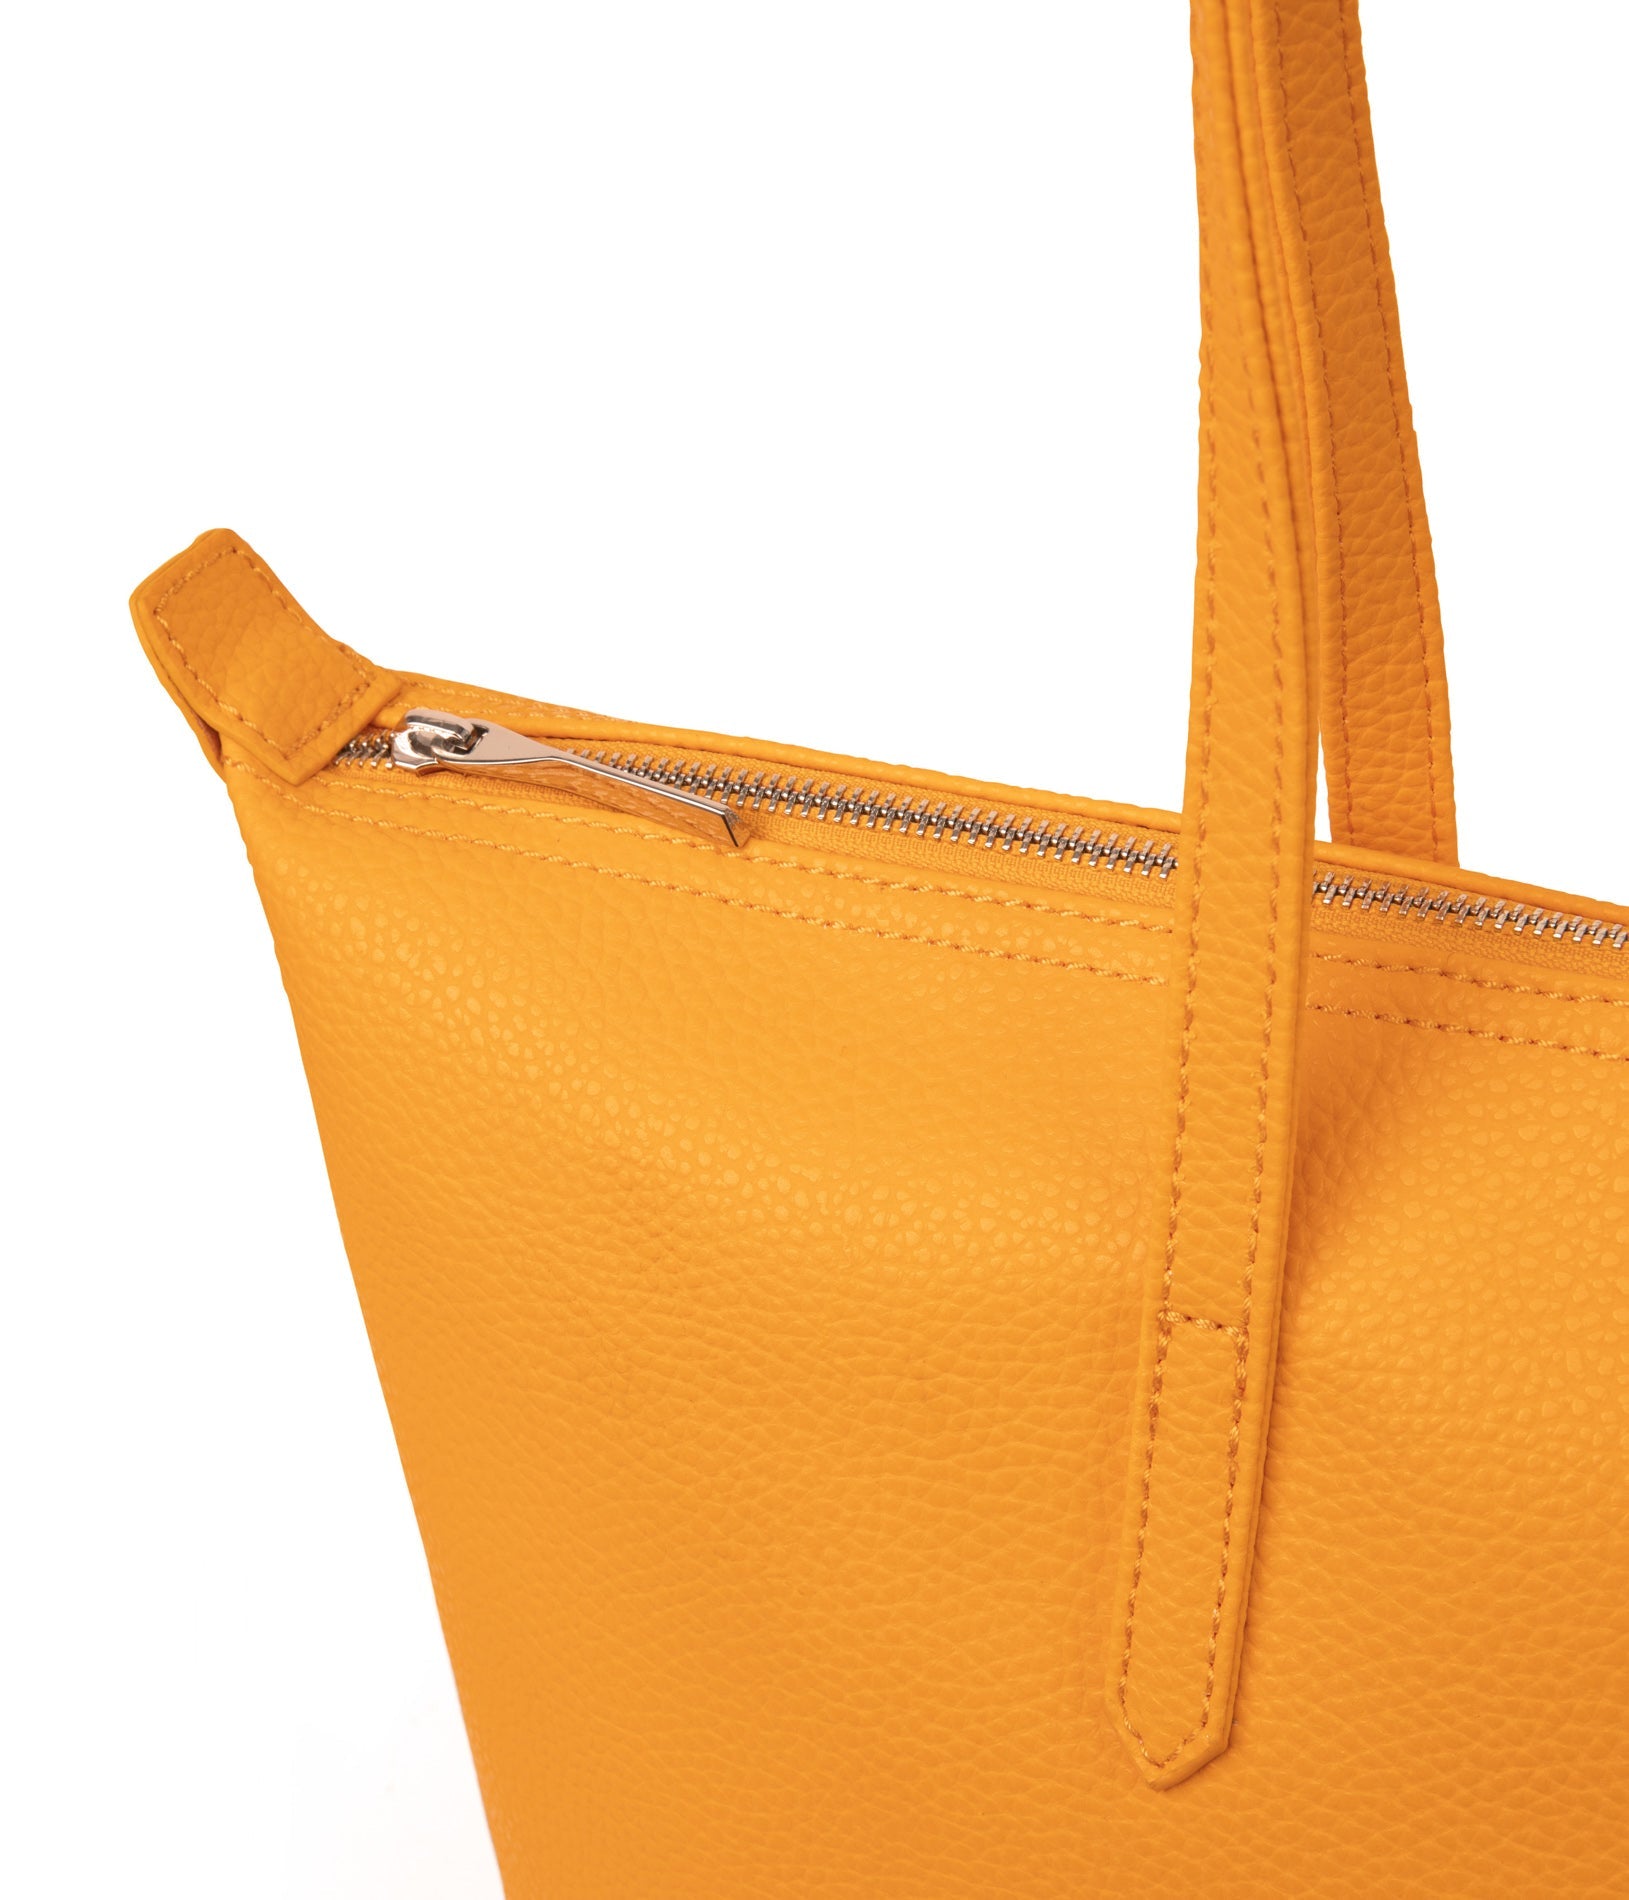 ABBI Vegan Tote Bag - Purity | Color: Orange - variant::arancia